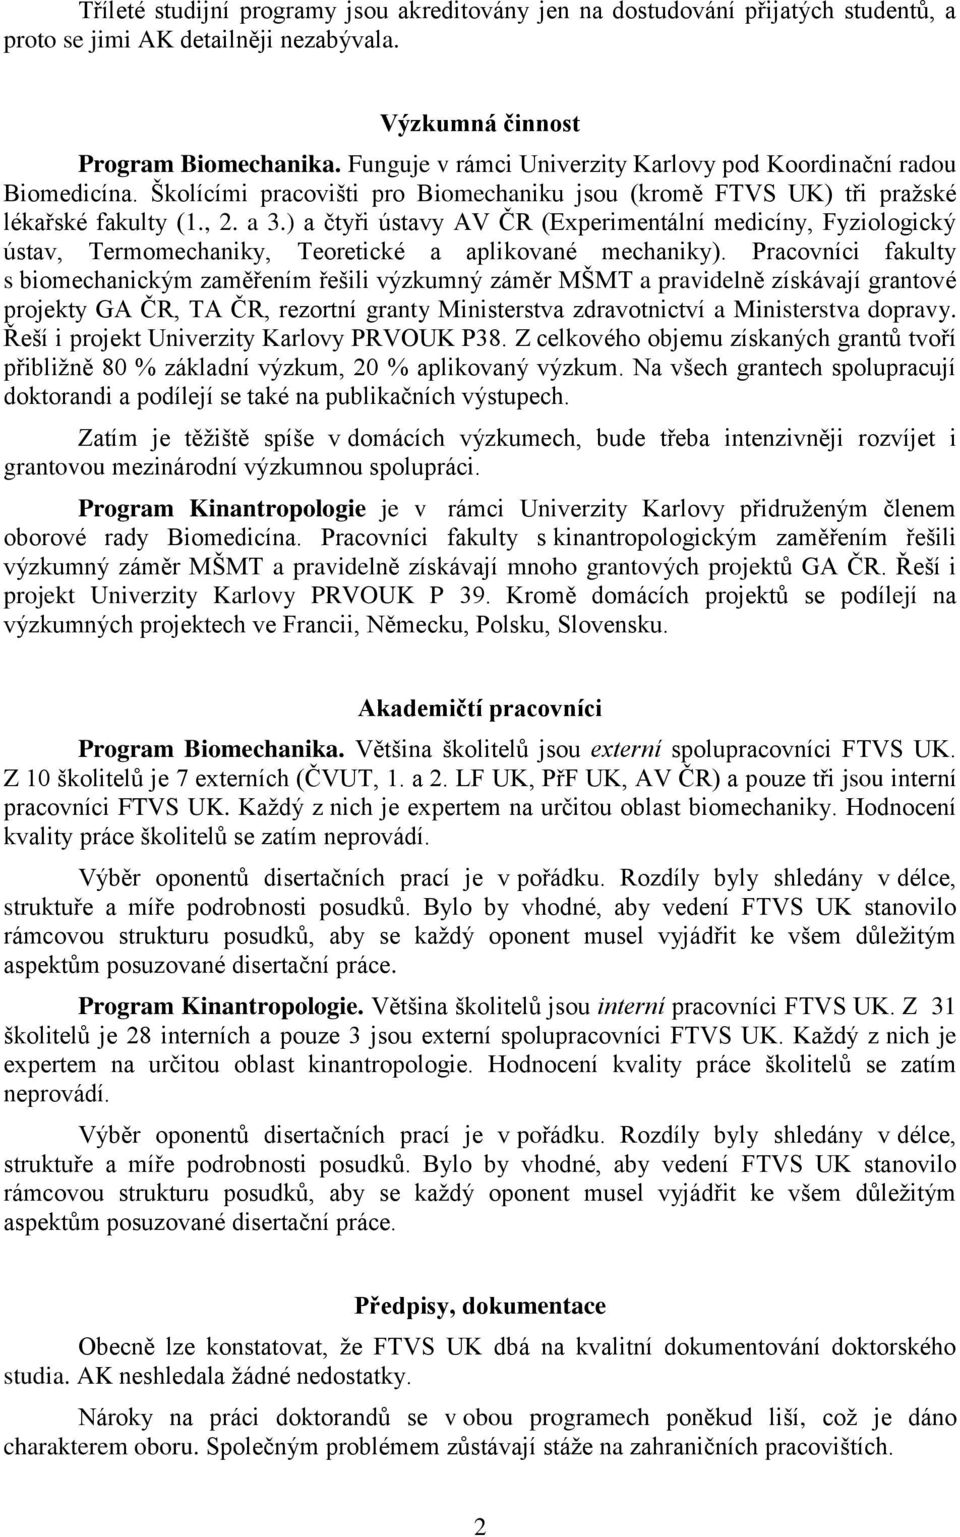 ) a čtyři ústavy AV ČR (Experimentální medicíny, Fyziologický ústav, Termomechaniky, Teoretické a aplikované mechaniky).